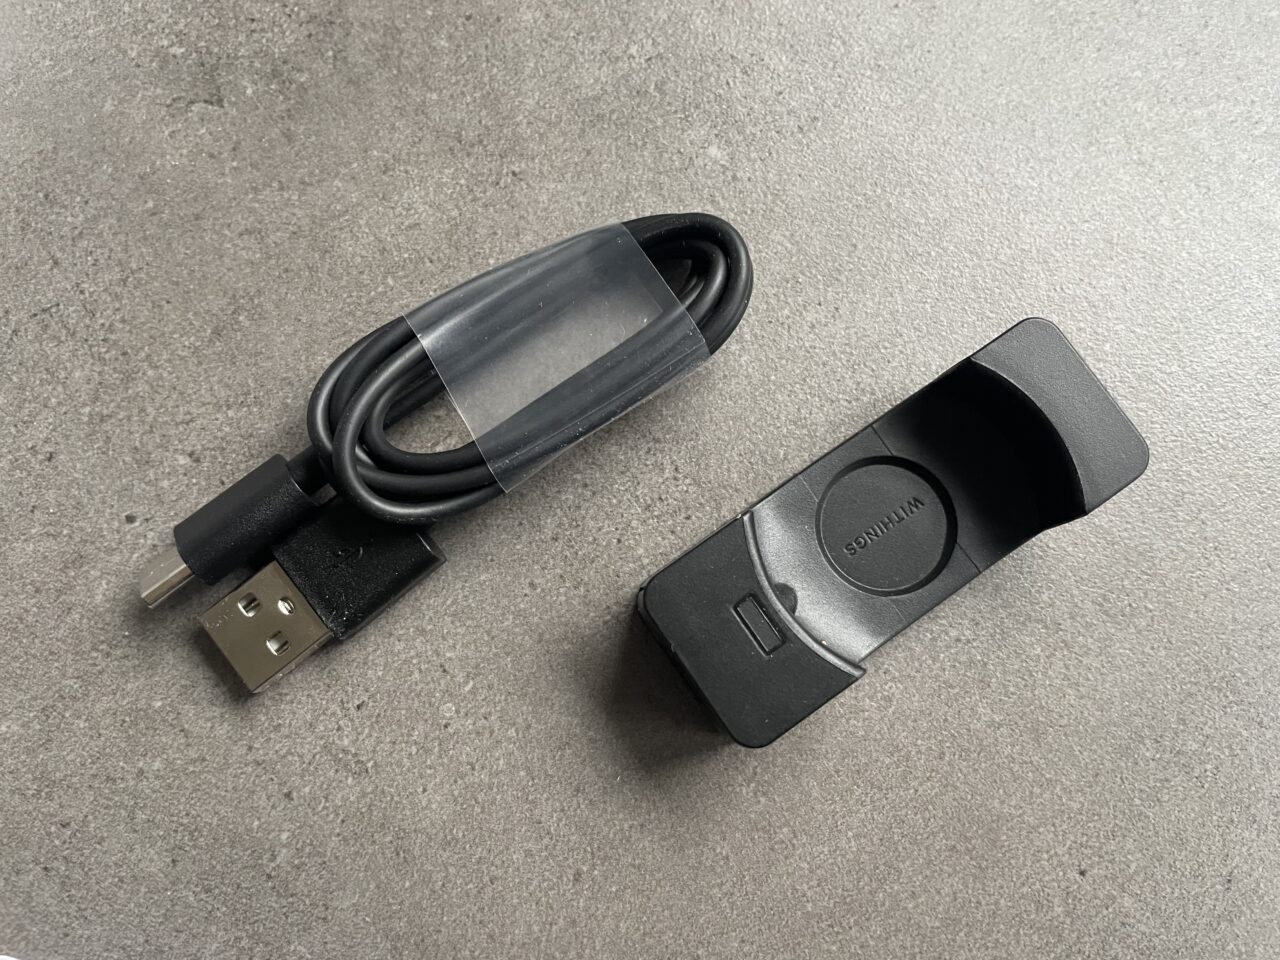 Czarny kabel USB i obudowa do elektroniki z napisem "WITTICISM" na szarym tle.